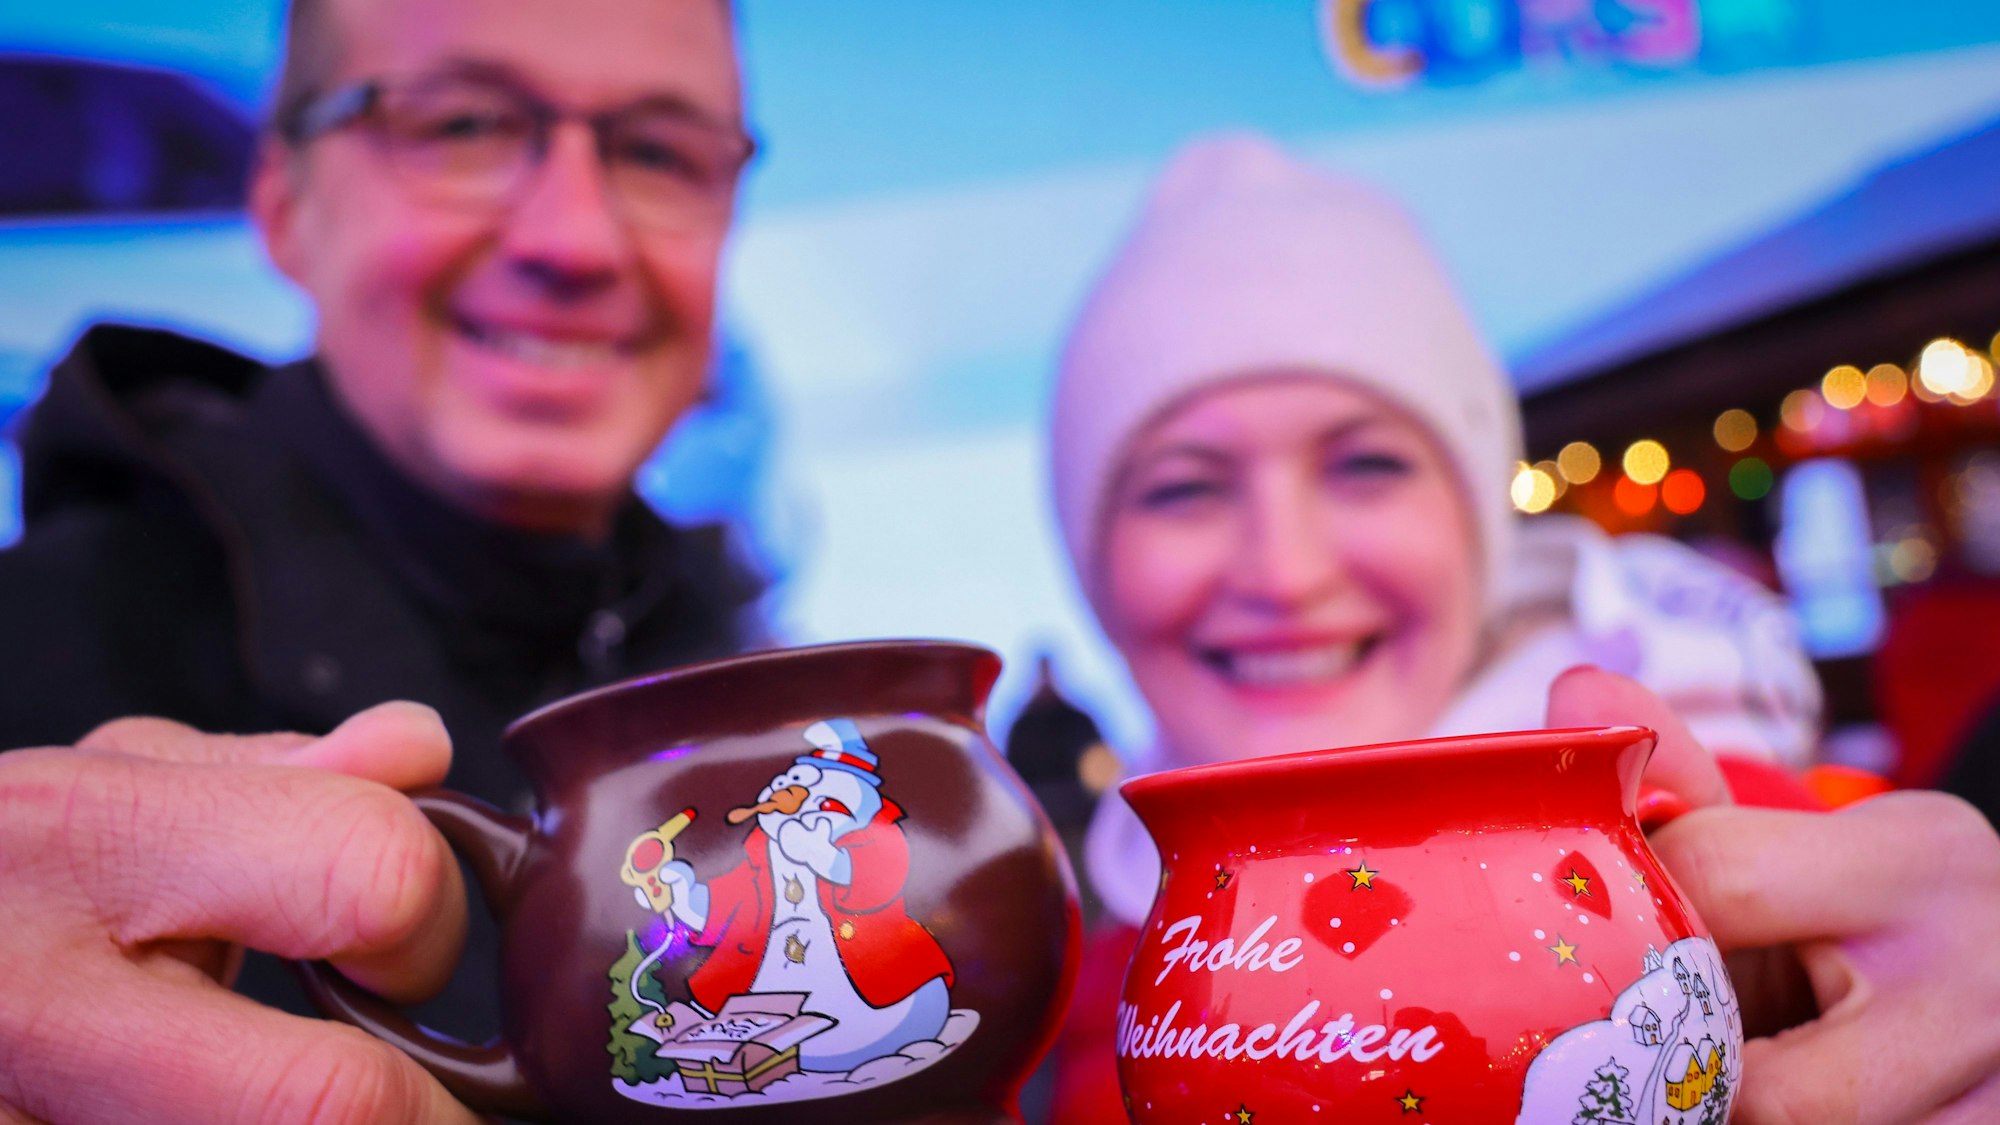 Ein Paar hält zwei Tassen mit heißem Glühwein kurz nach der Eröffnung eines Weihnachtsmarktes in den Händen und stößt an.